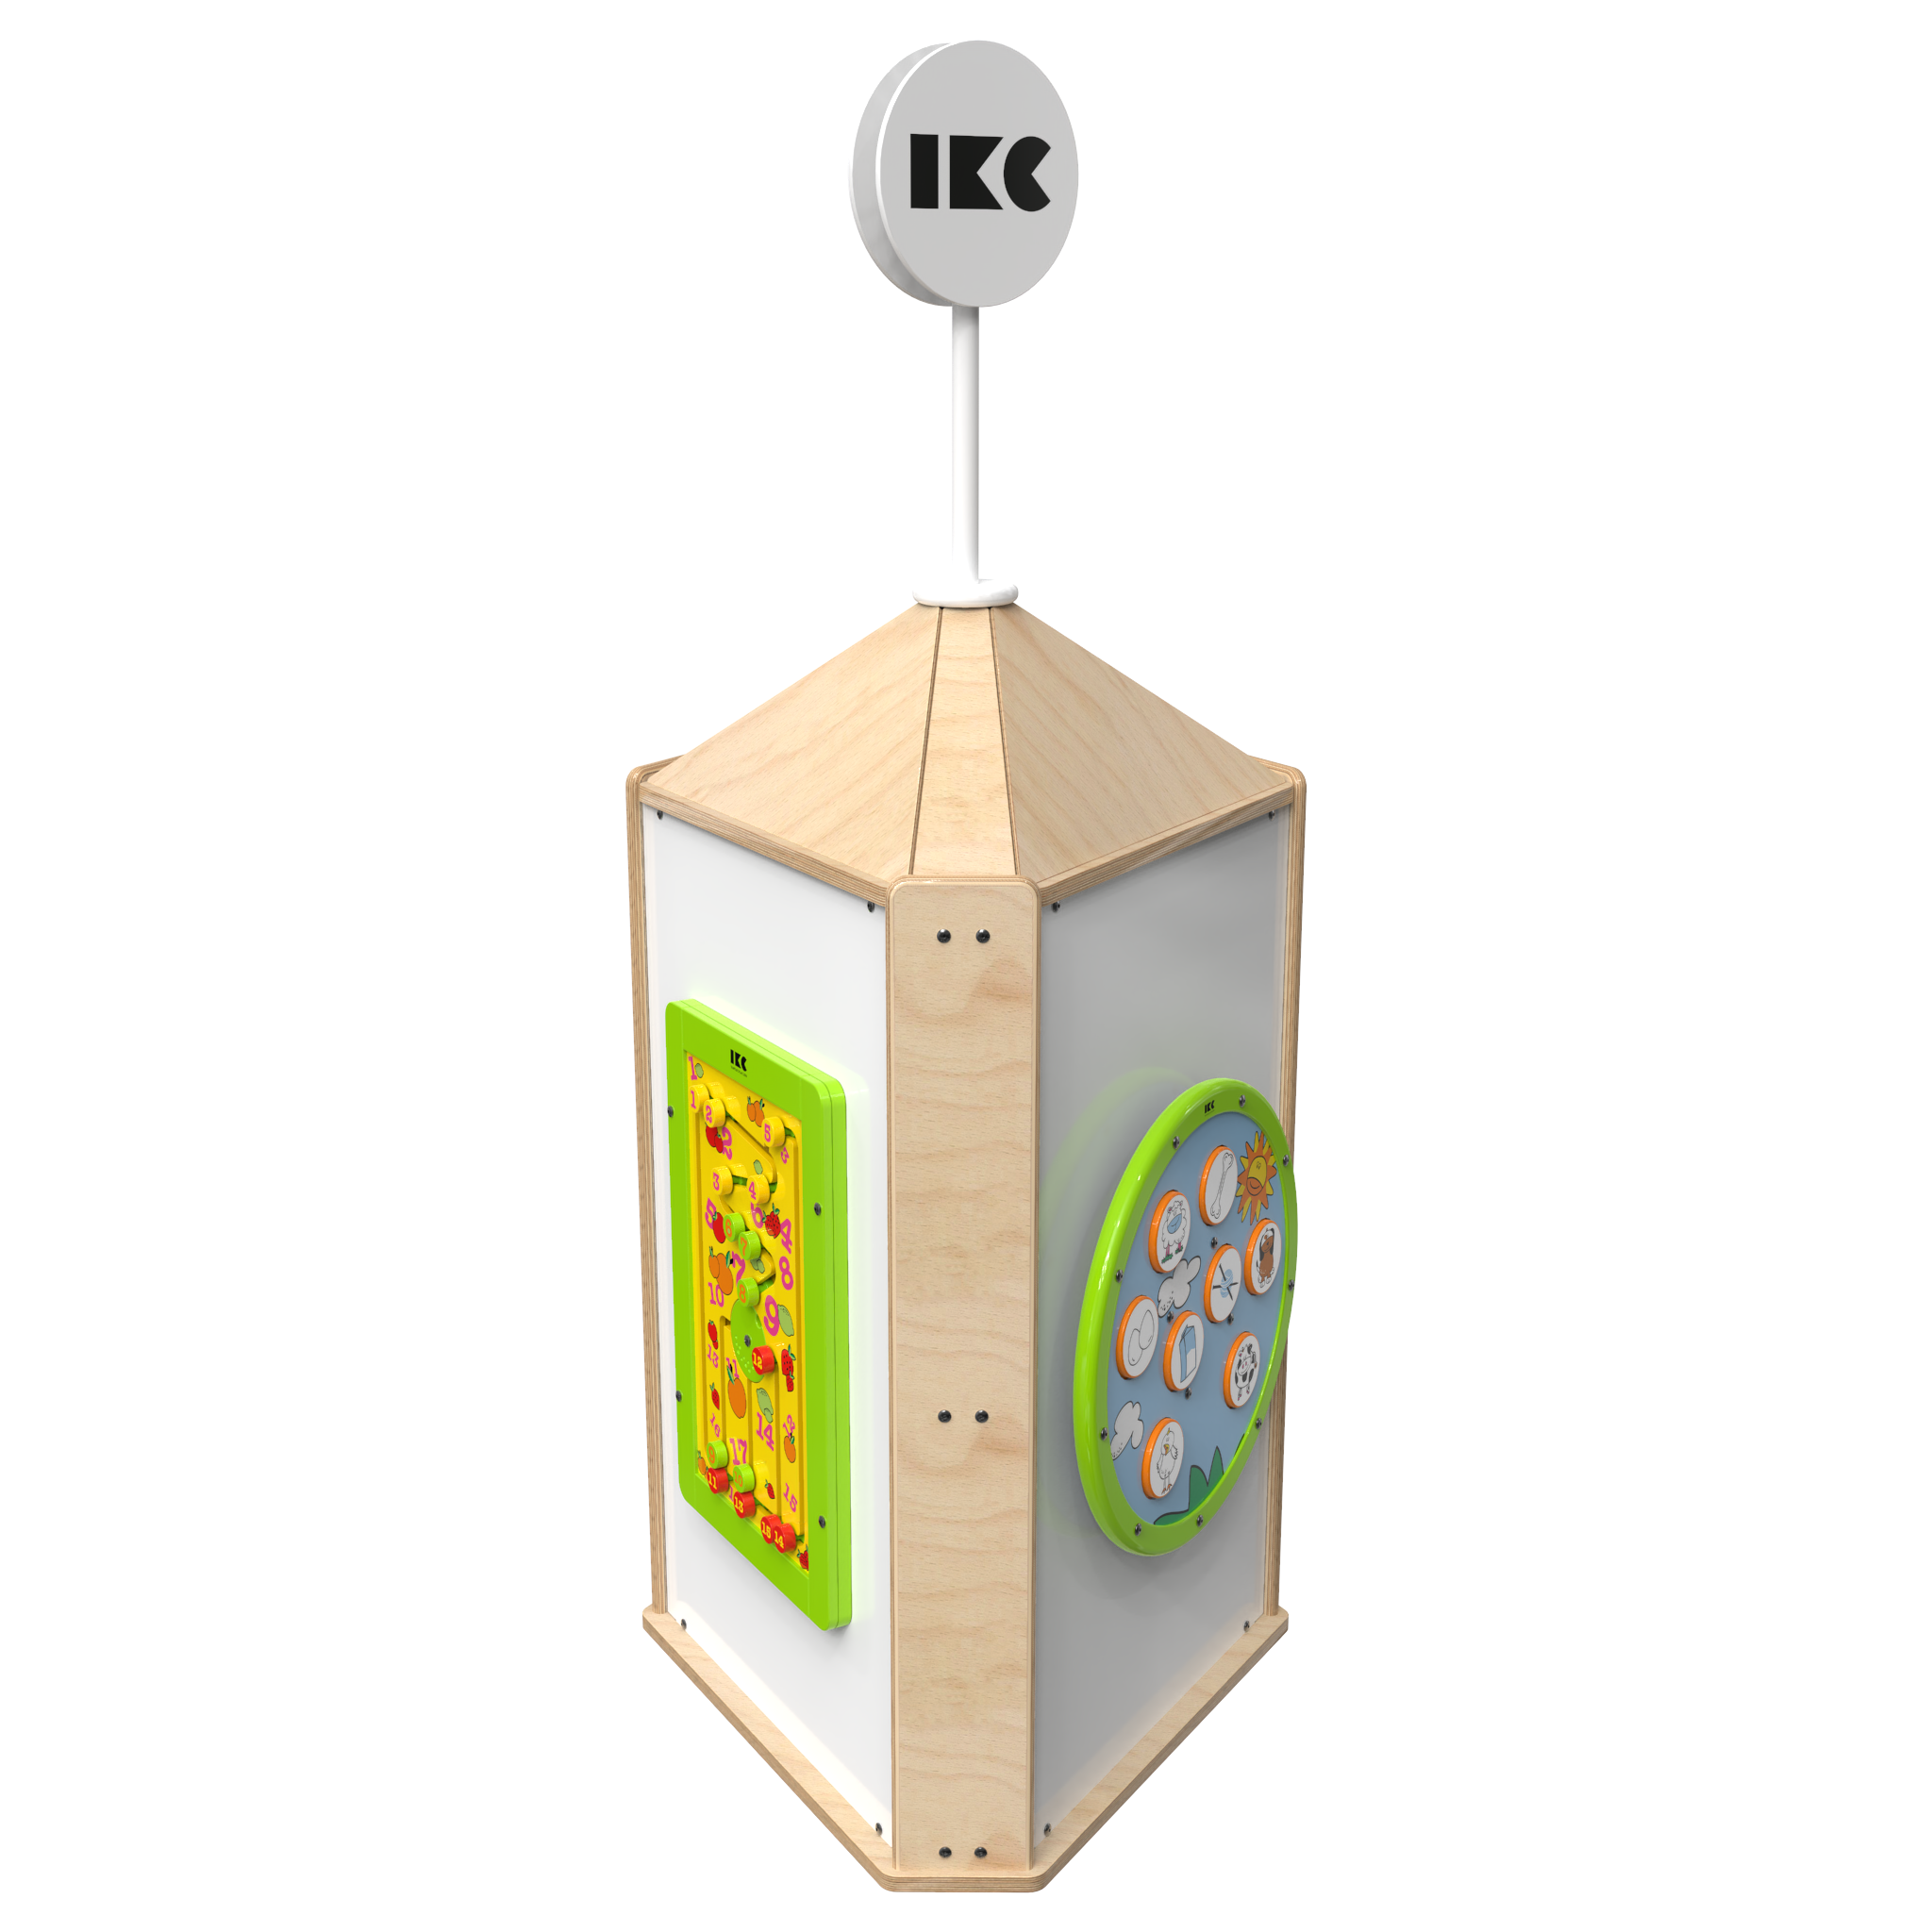 To zdjęcie pokazuje interaktywny system do zabaw Playtower touch wood